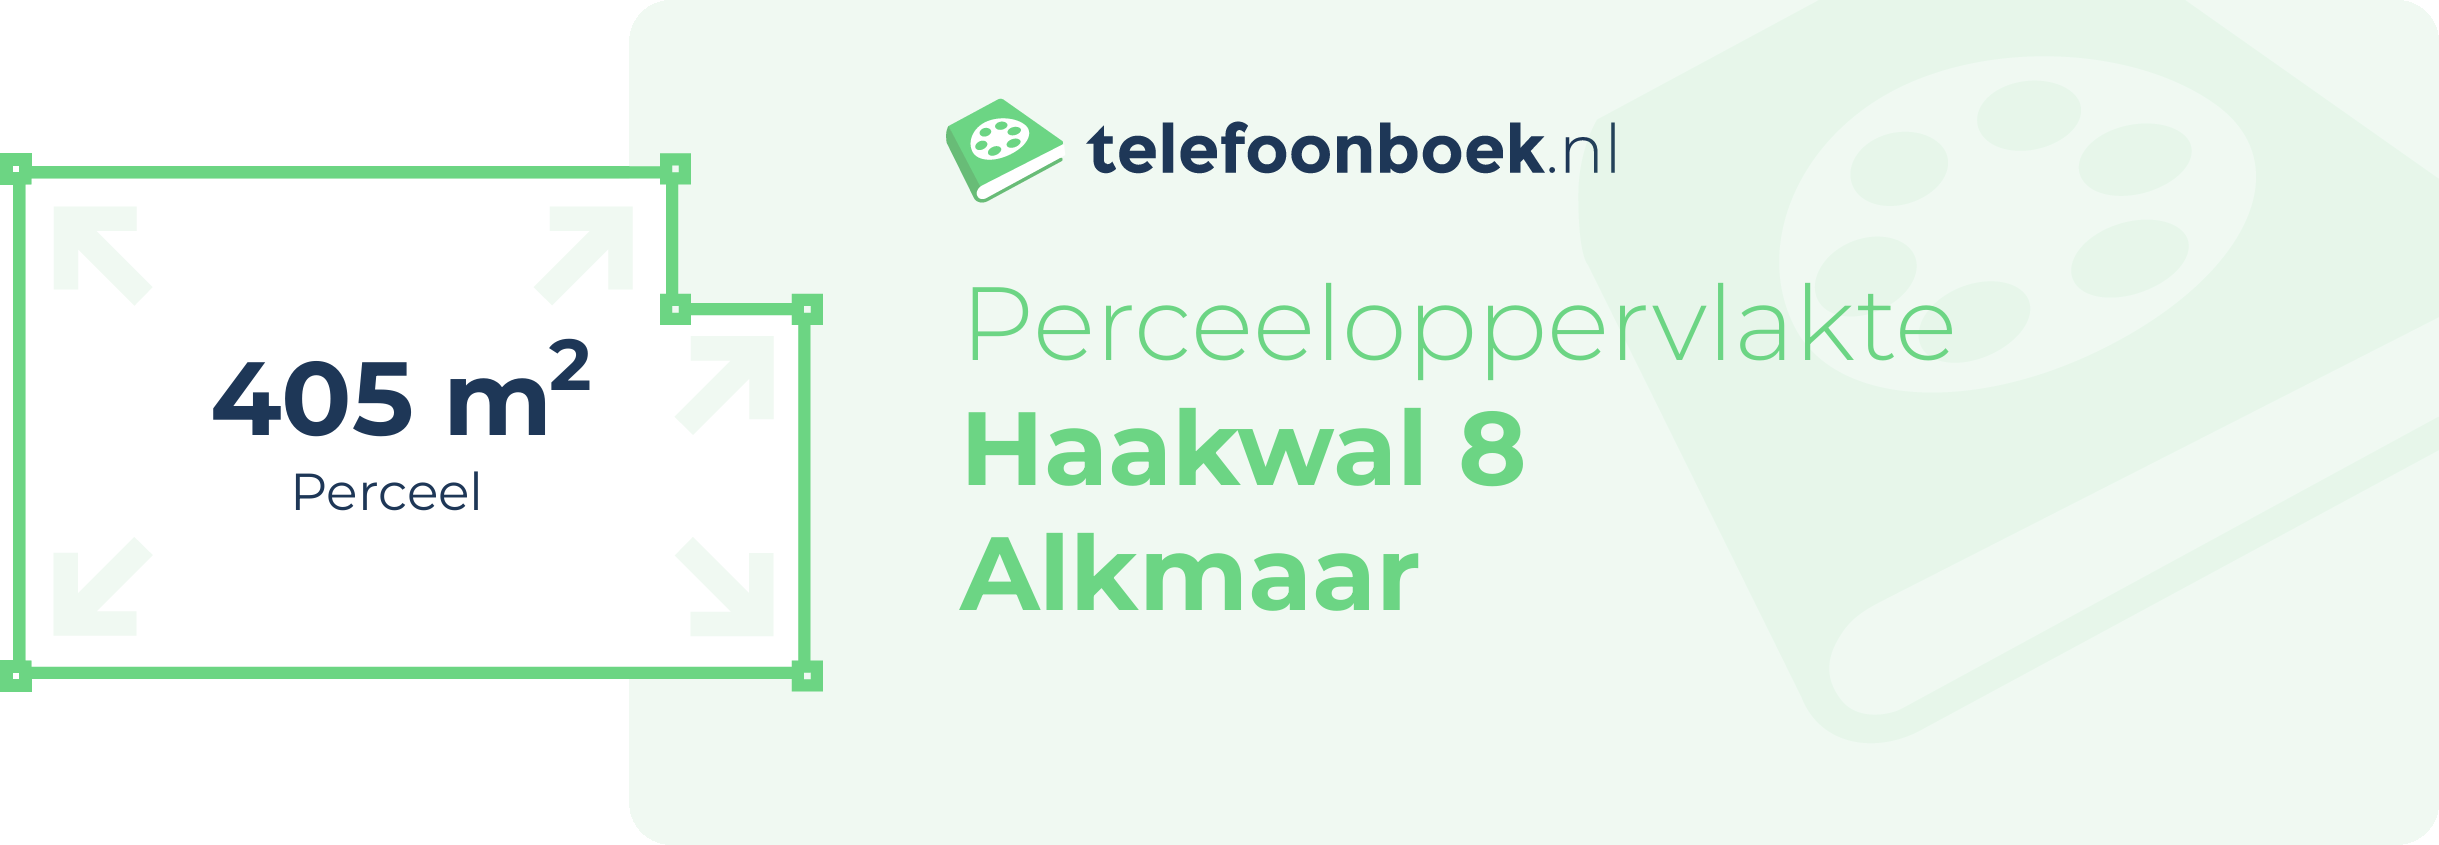 Perceeloppervlakte Haakwal 8 Alkmaar